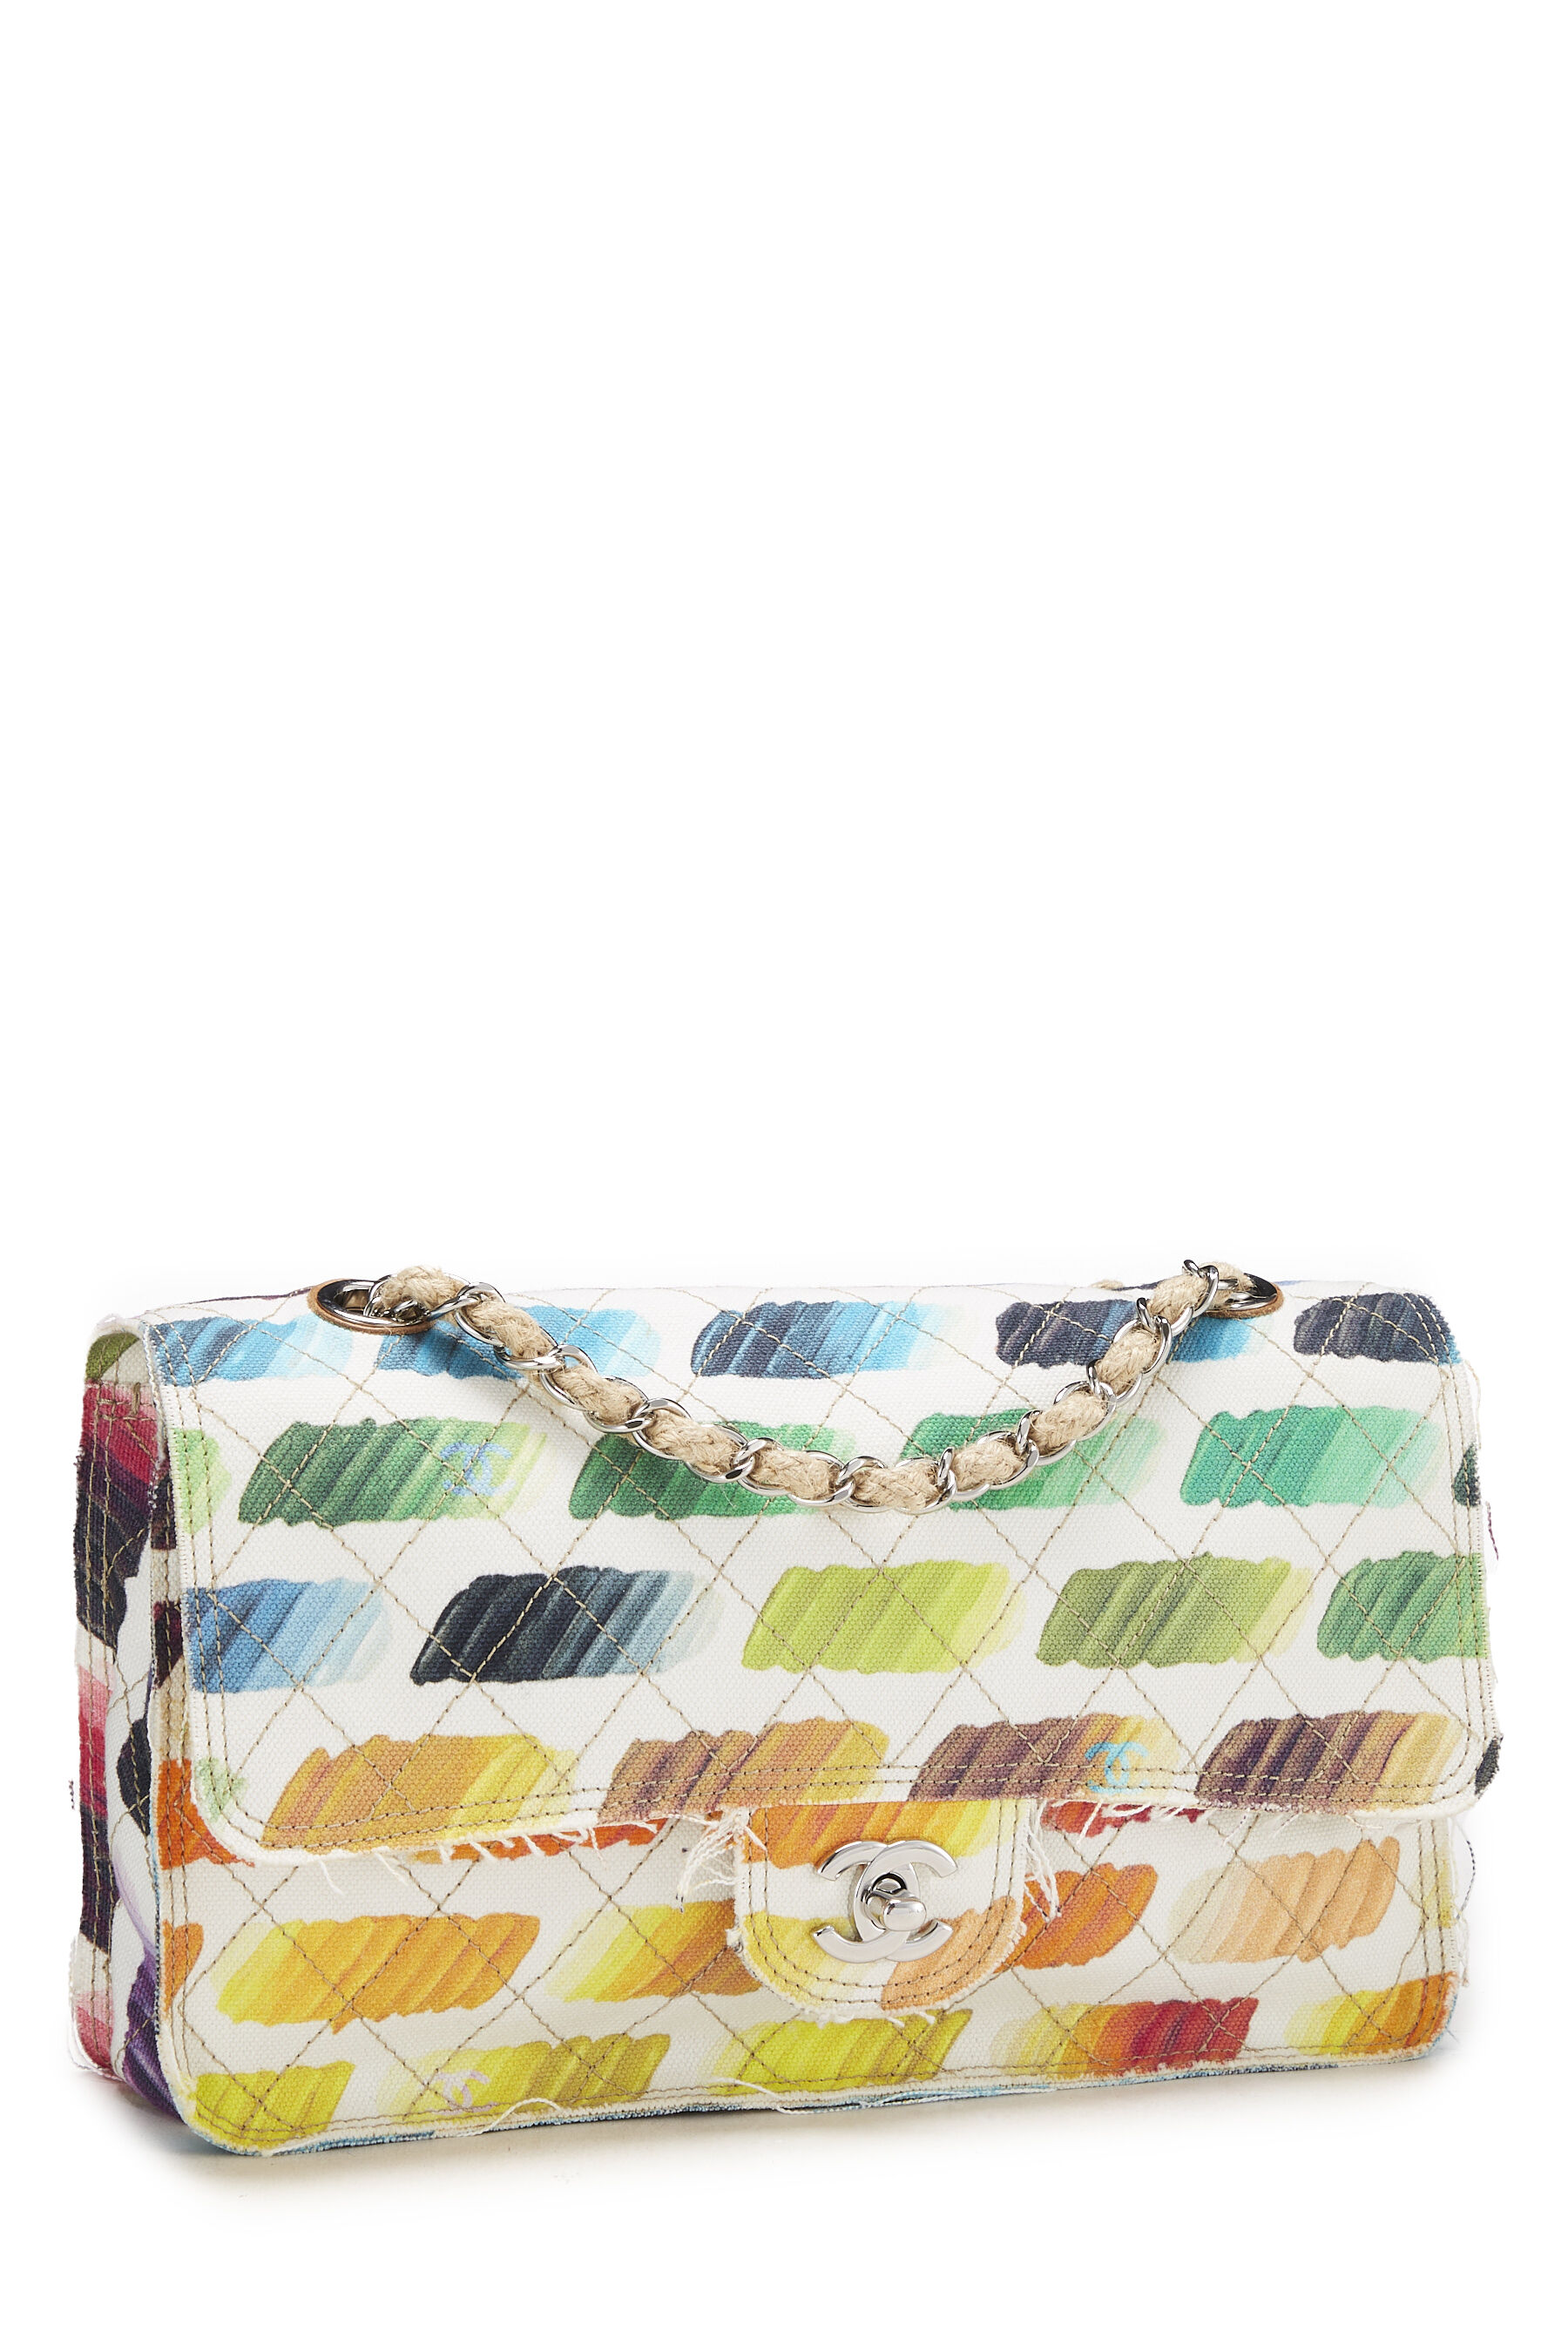 Chanel - Multicolor Colorama Printed Canvas Flap Bag Medium